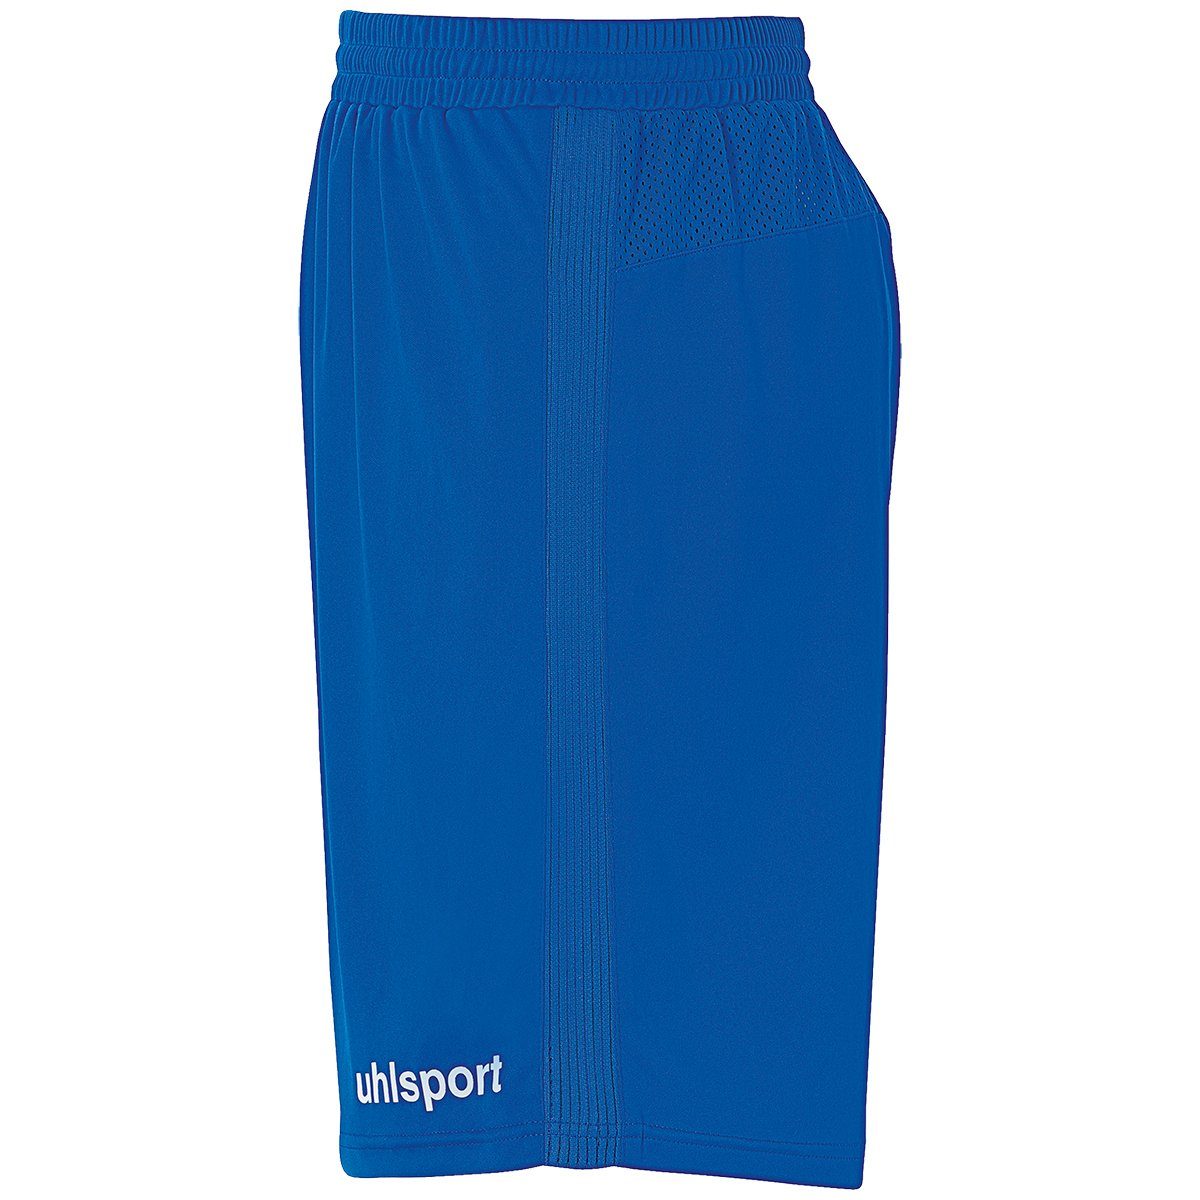 azurblau/weiß uhlsport PERFORMANCE Shorts SHORTS Shorts uhlsport